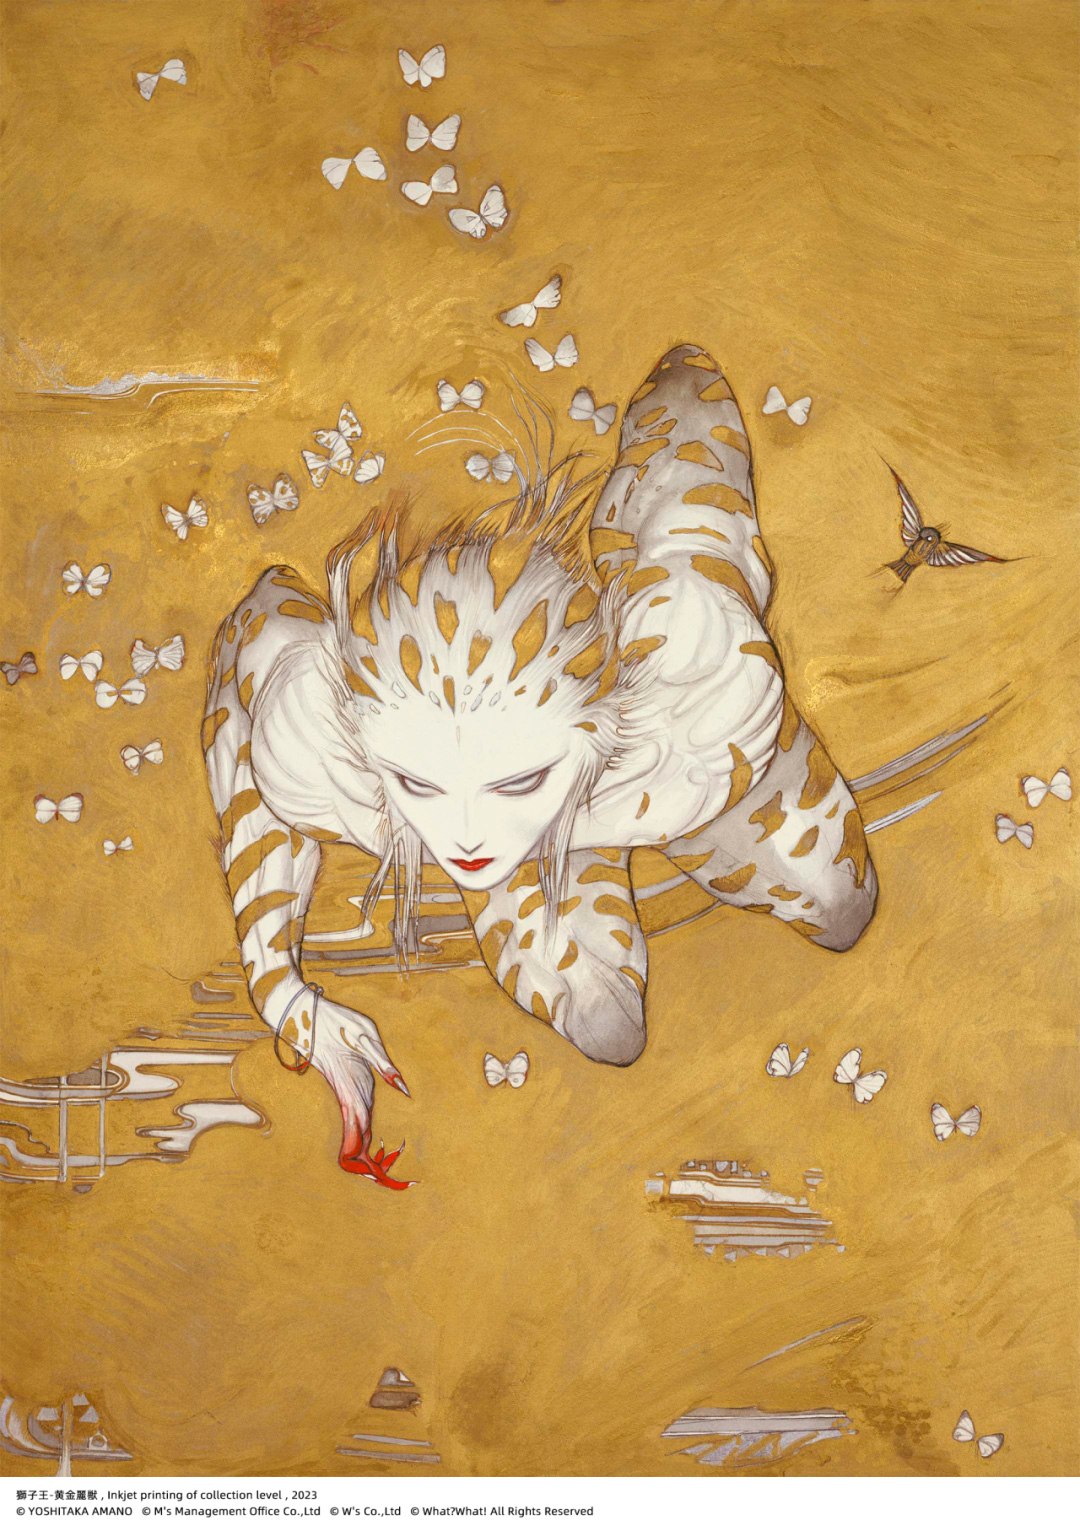 缀·梦Dreamer——天野喜孝YOSHITAKA AMANO-看客网-艺术观展指南-艺术展览 